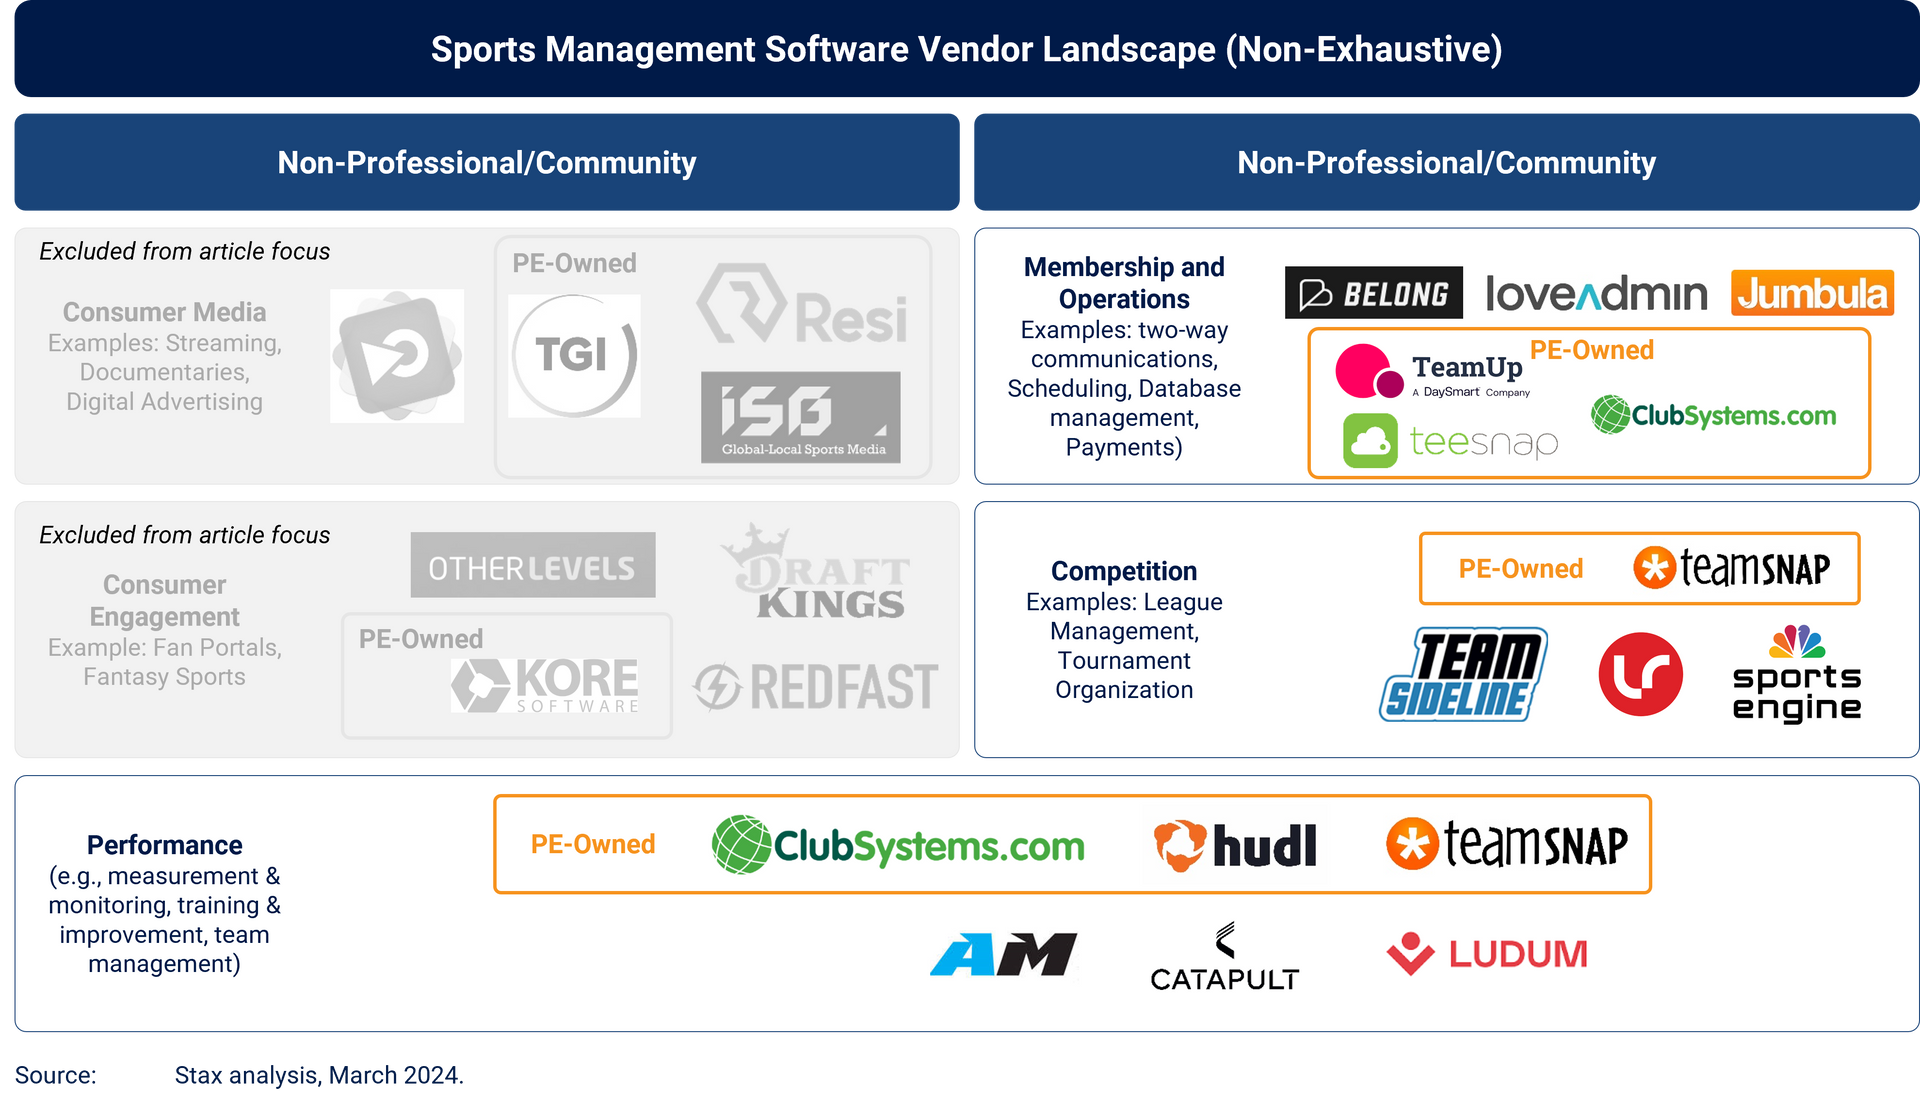 Sports management software vendor landscape (non-exhaustive)